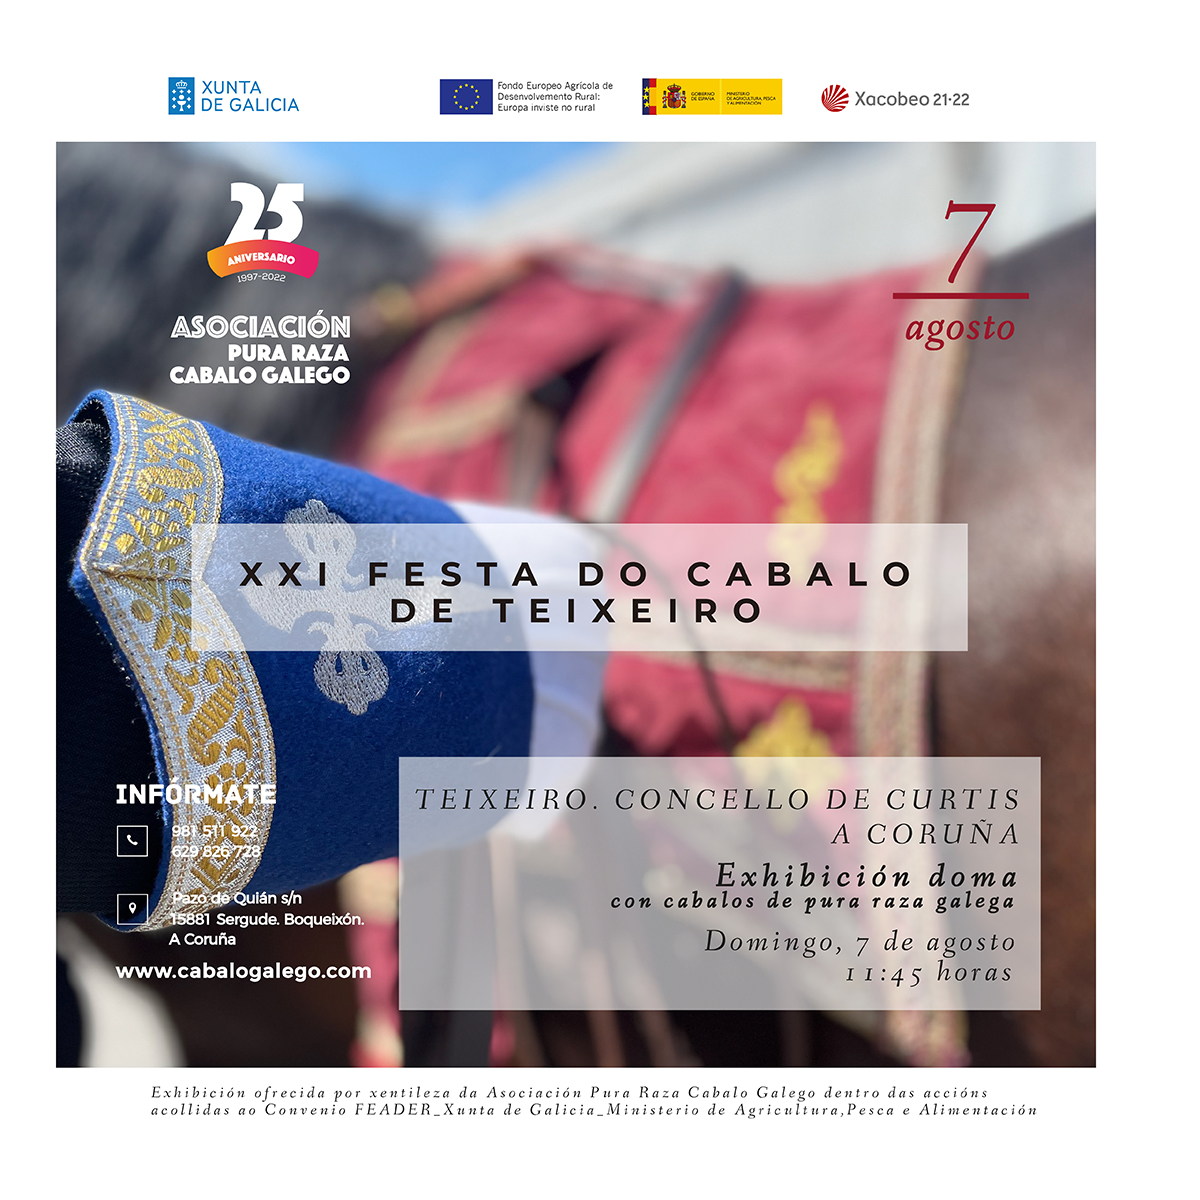 Exhibición de Doma con cabalos de pura raza galega XXI Festa do Cabalo de Teixeiro.